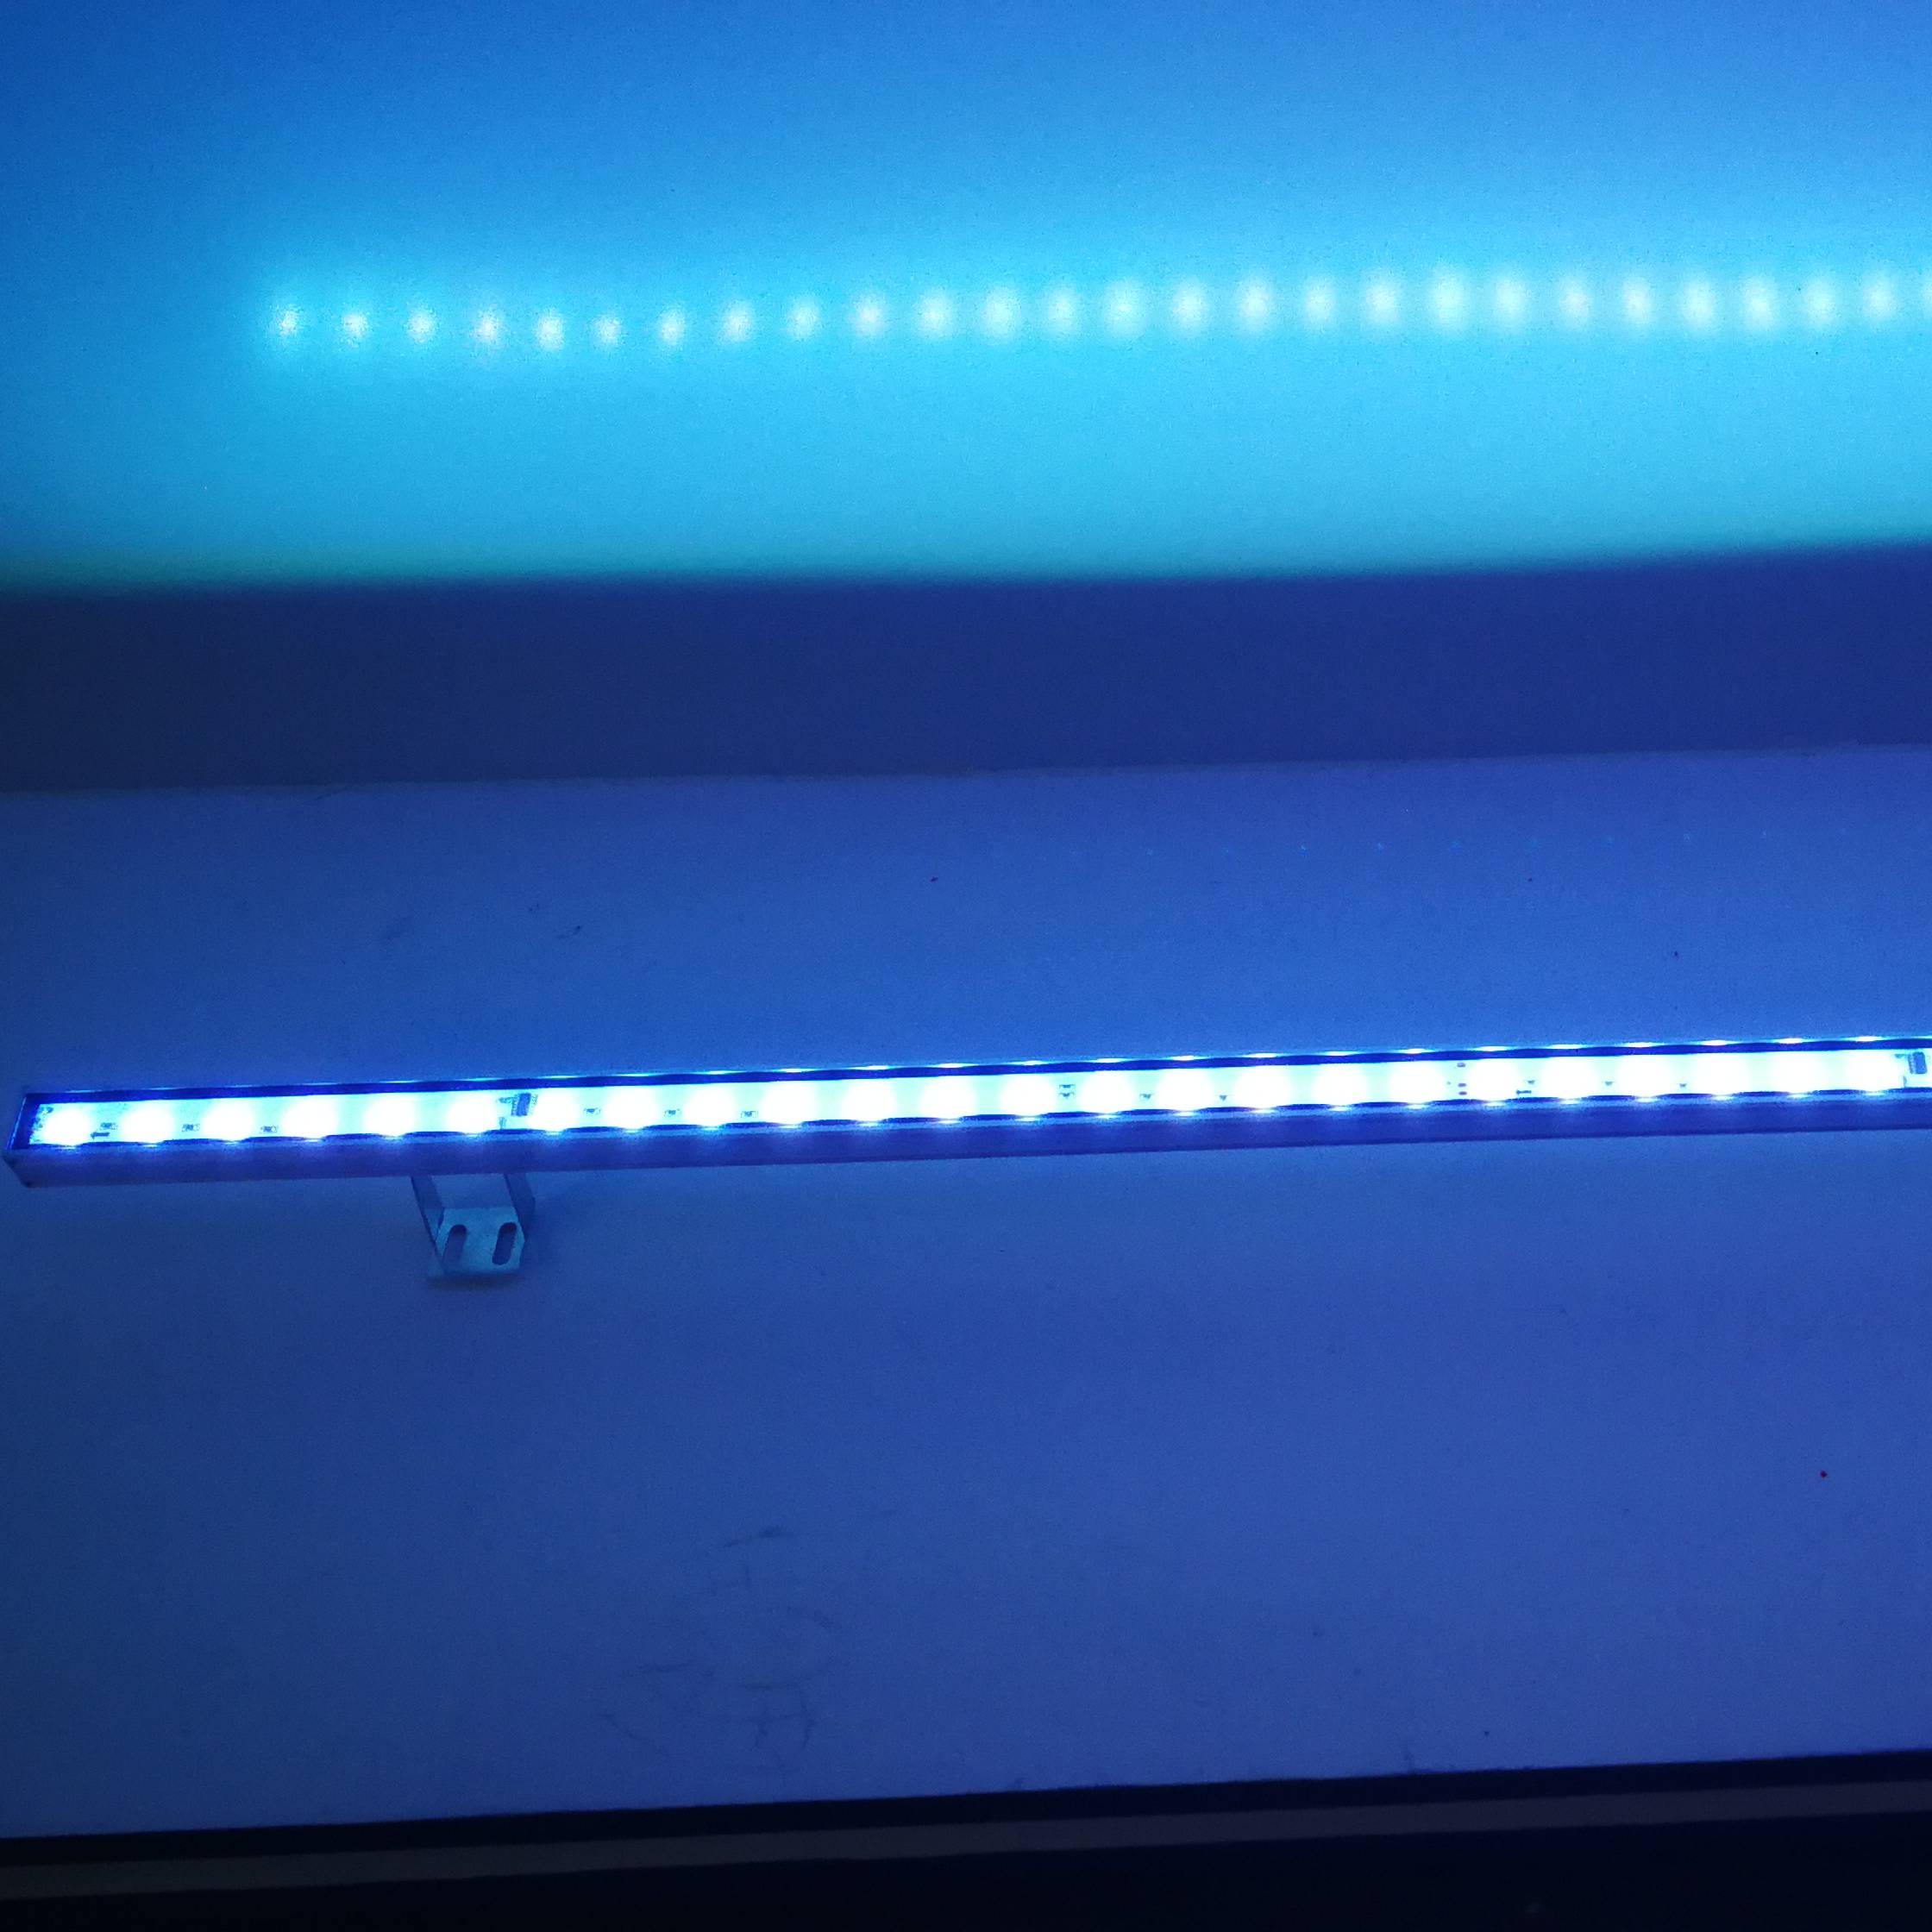 გარე ალუმინის LED ხაზოვანი განათება